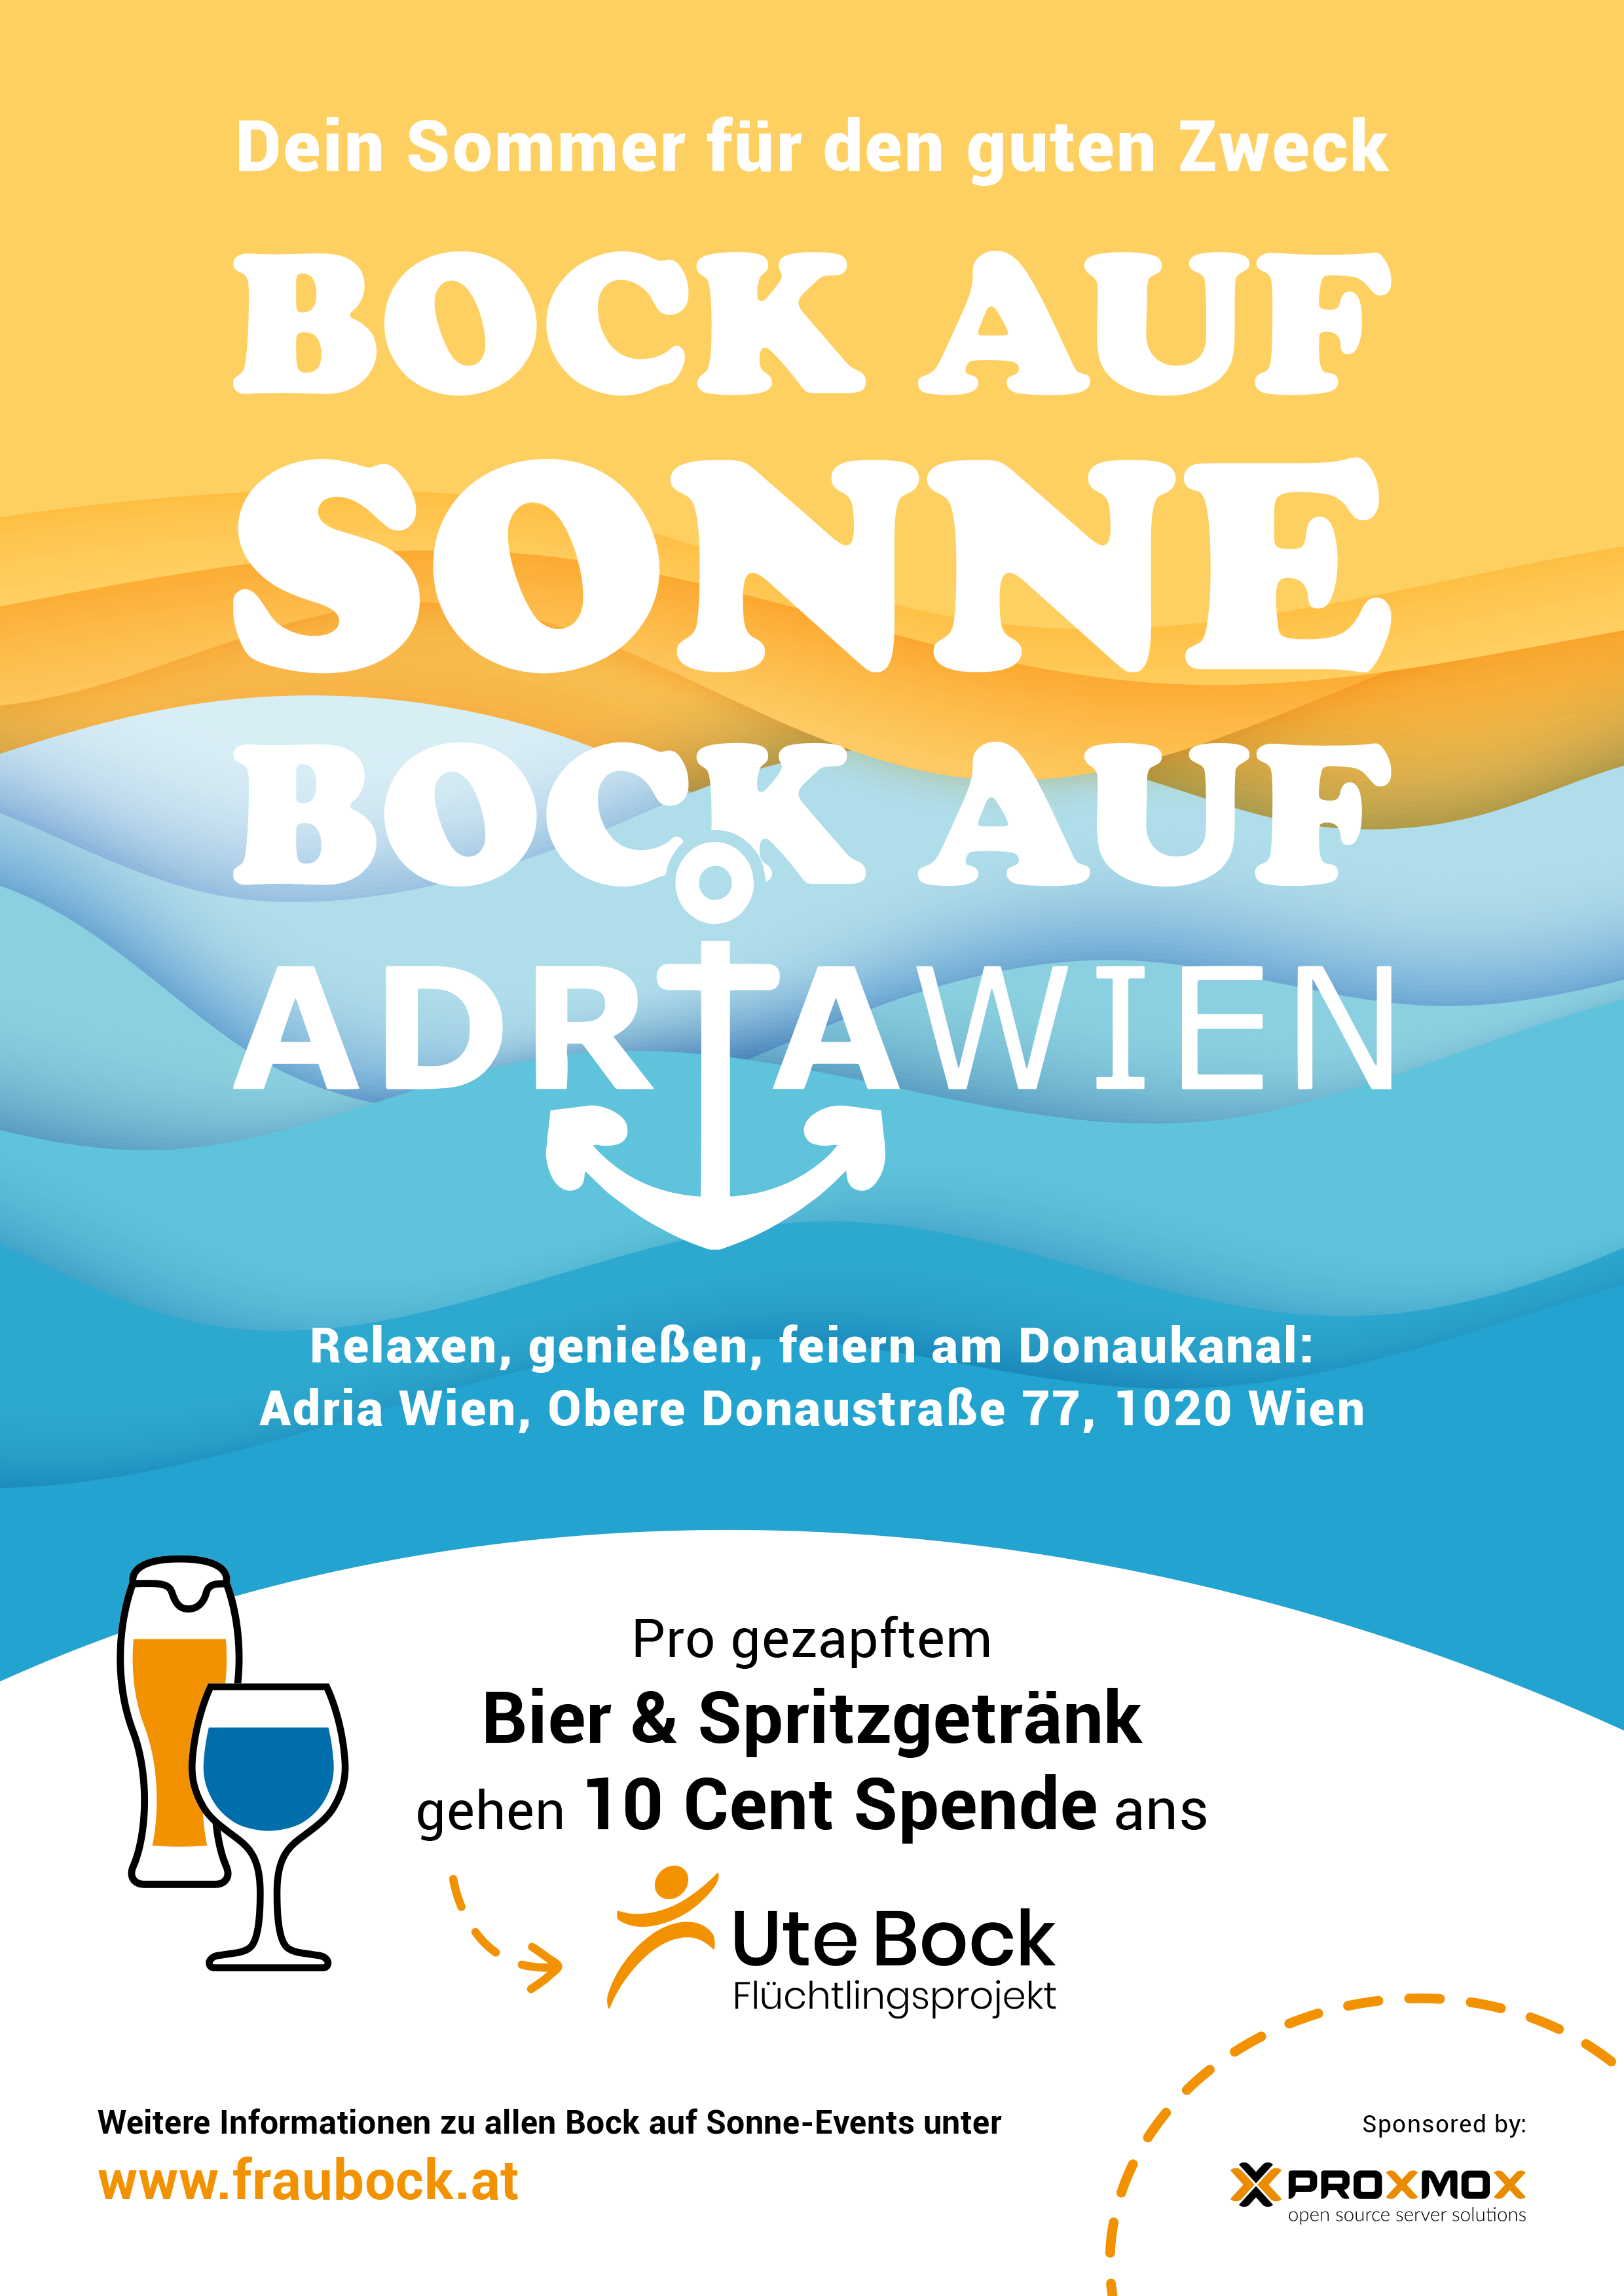 Einladung zur Opening Party "Bock auf Sonne" im Adria Wien am 11. Mai ab 17:30 Uhr